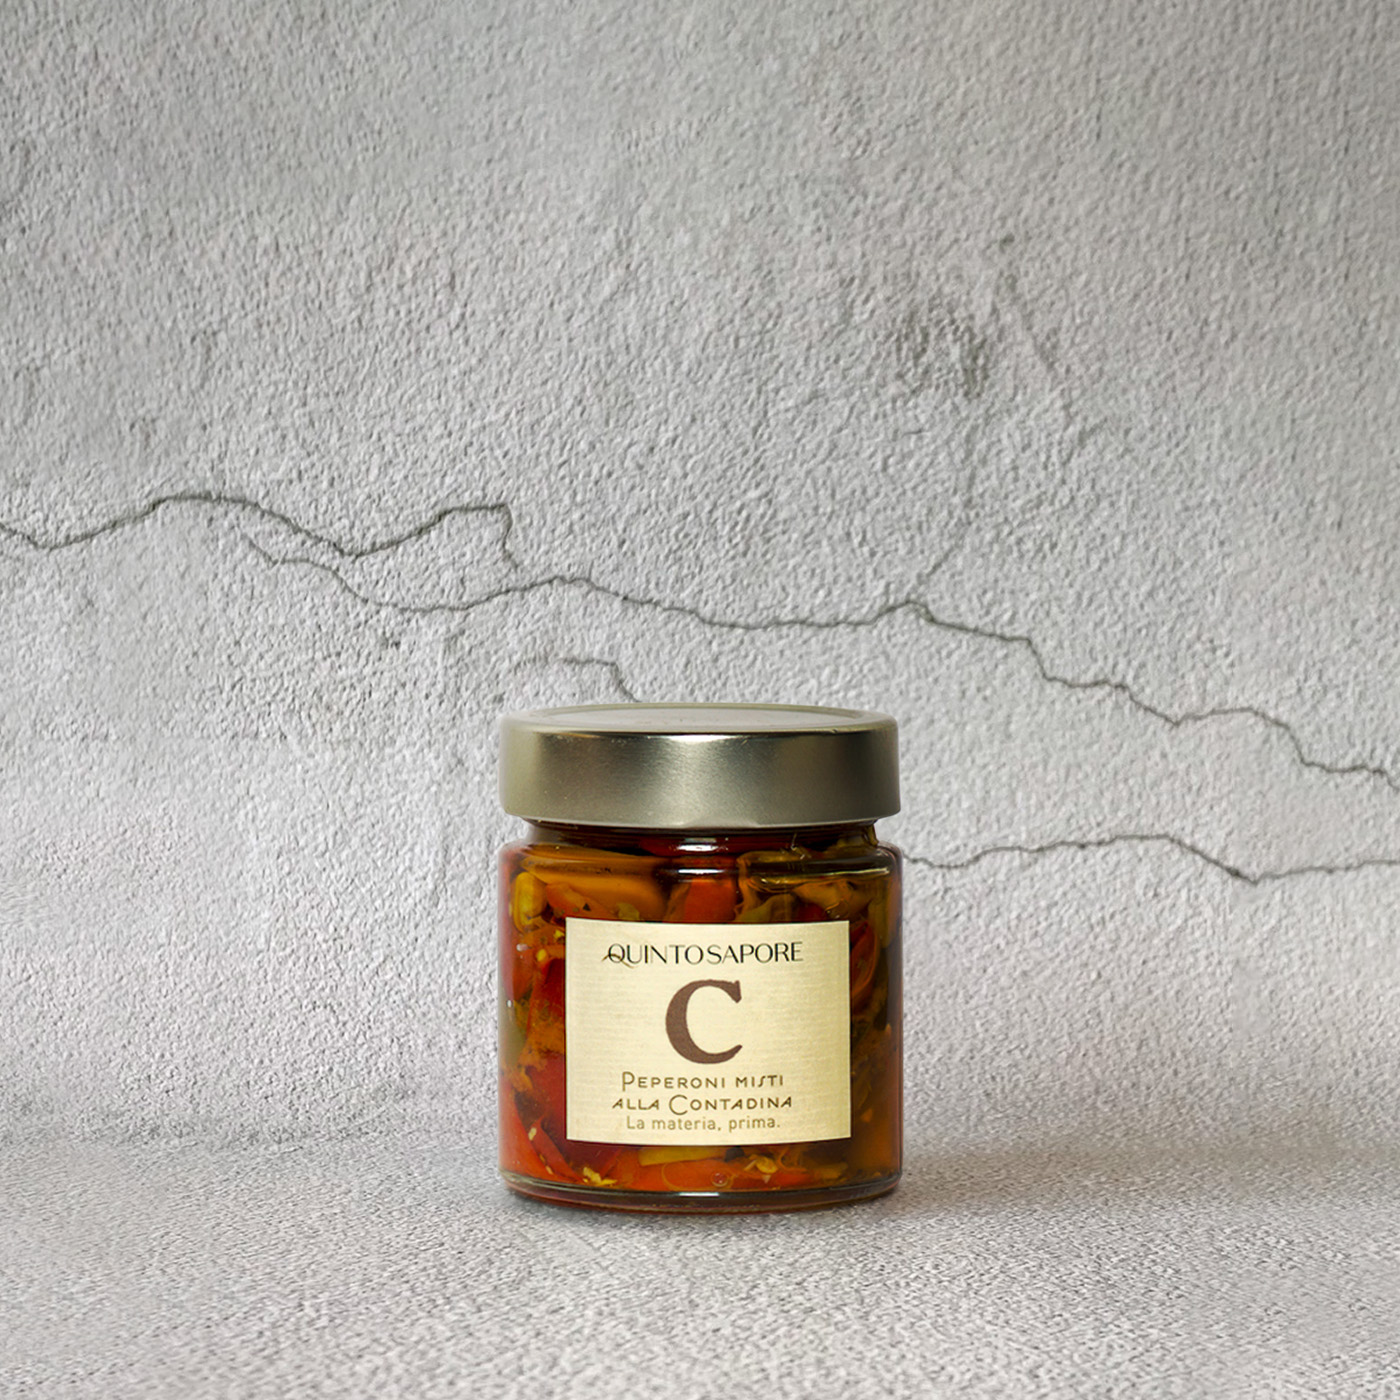 Santocielo - Product Carousel - Peperoni misti alla contadina